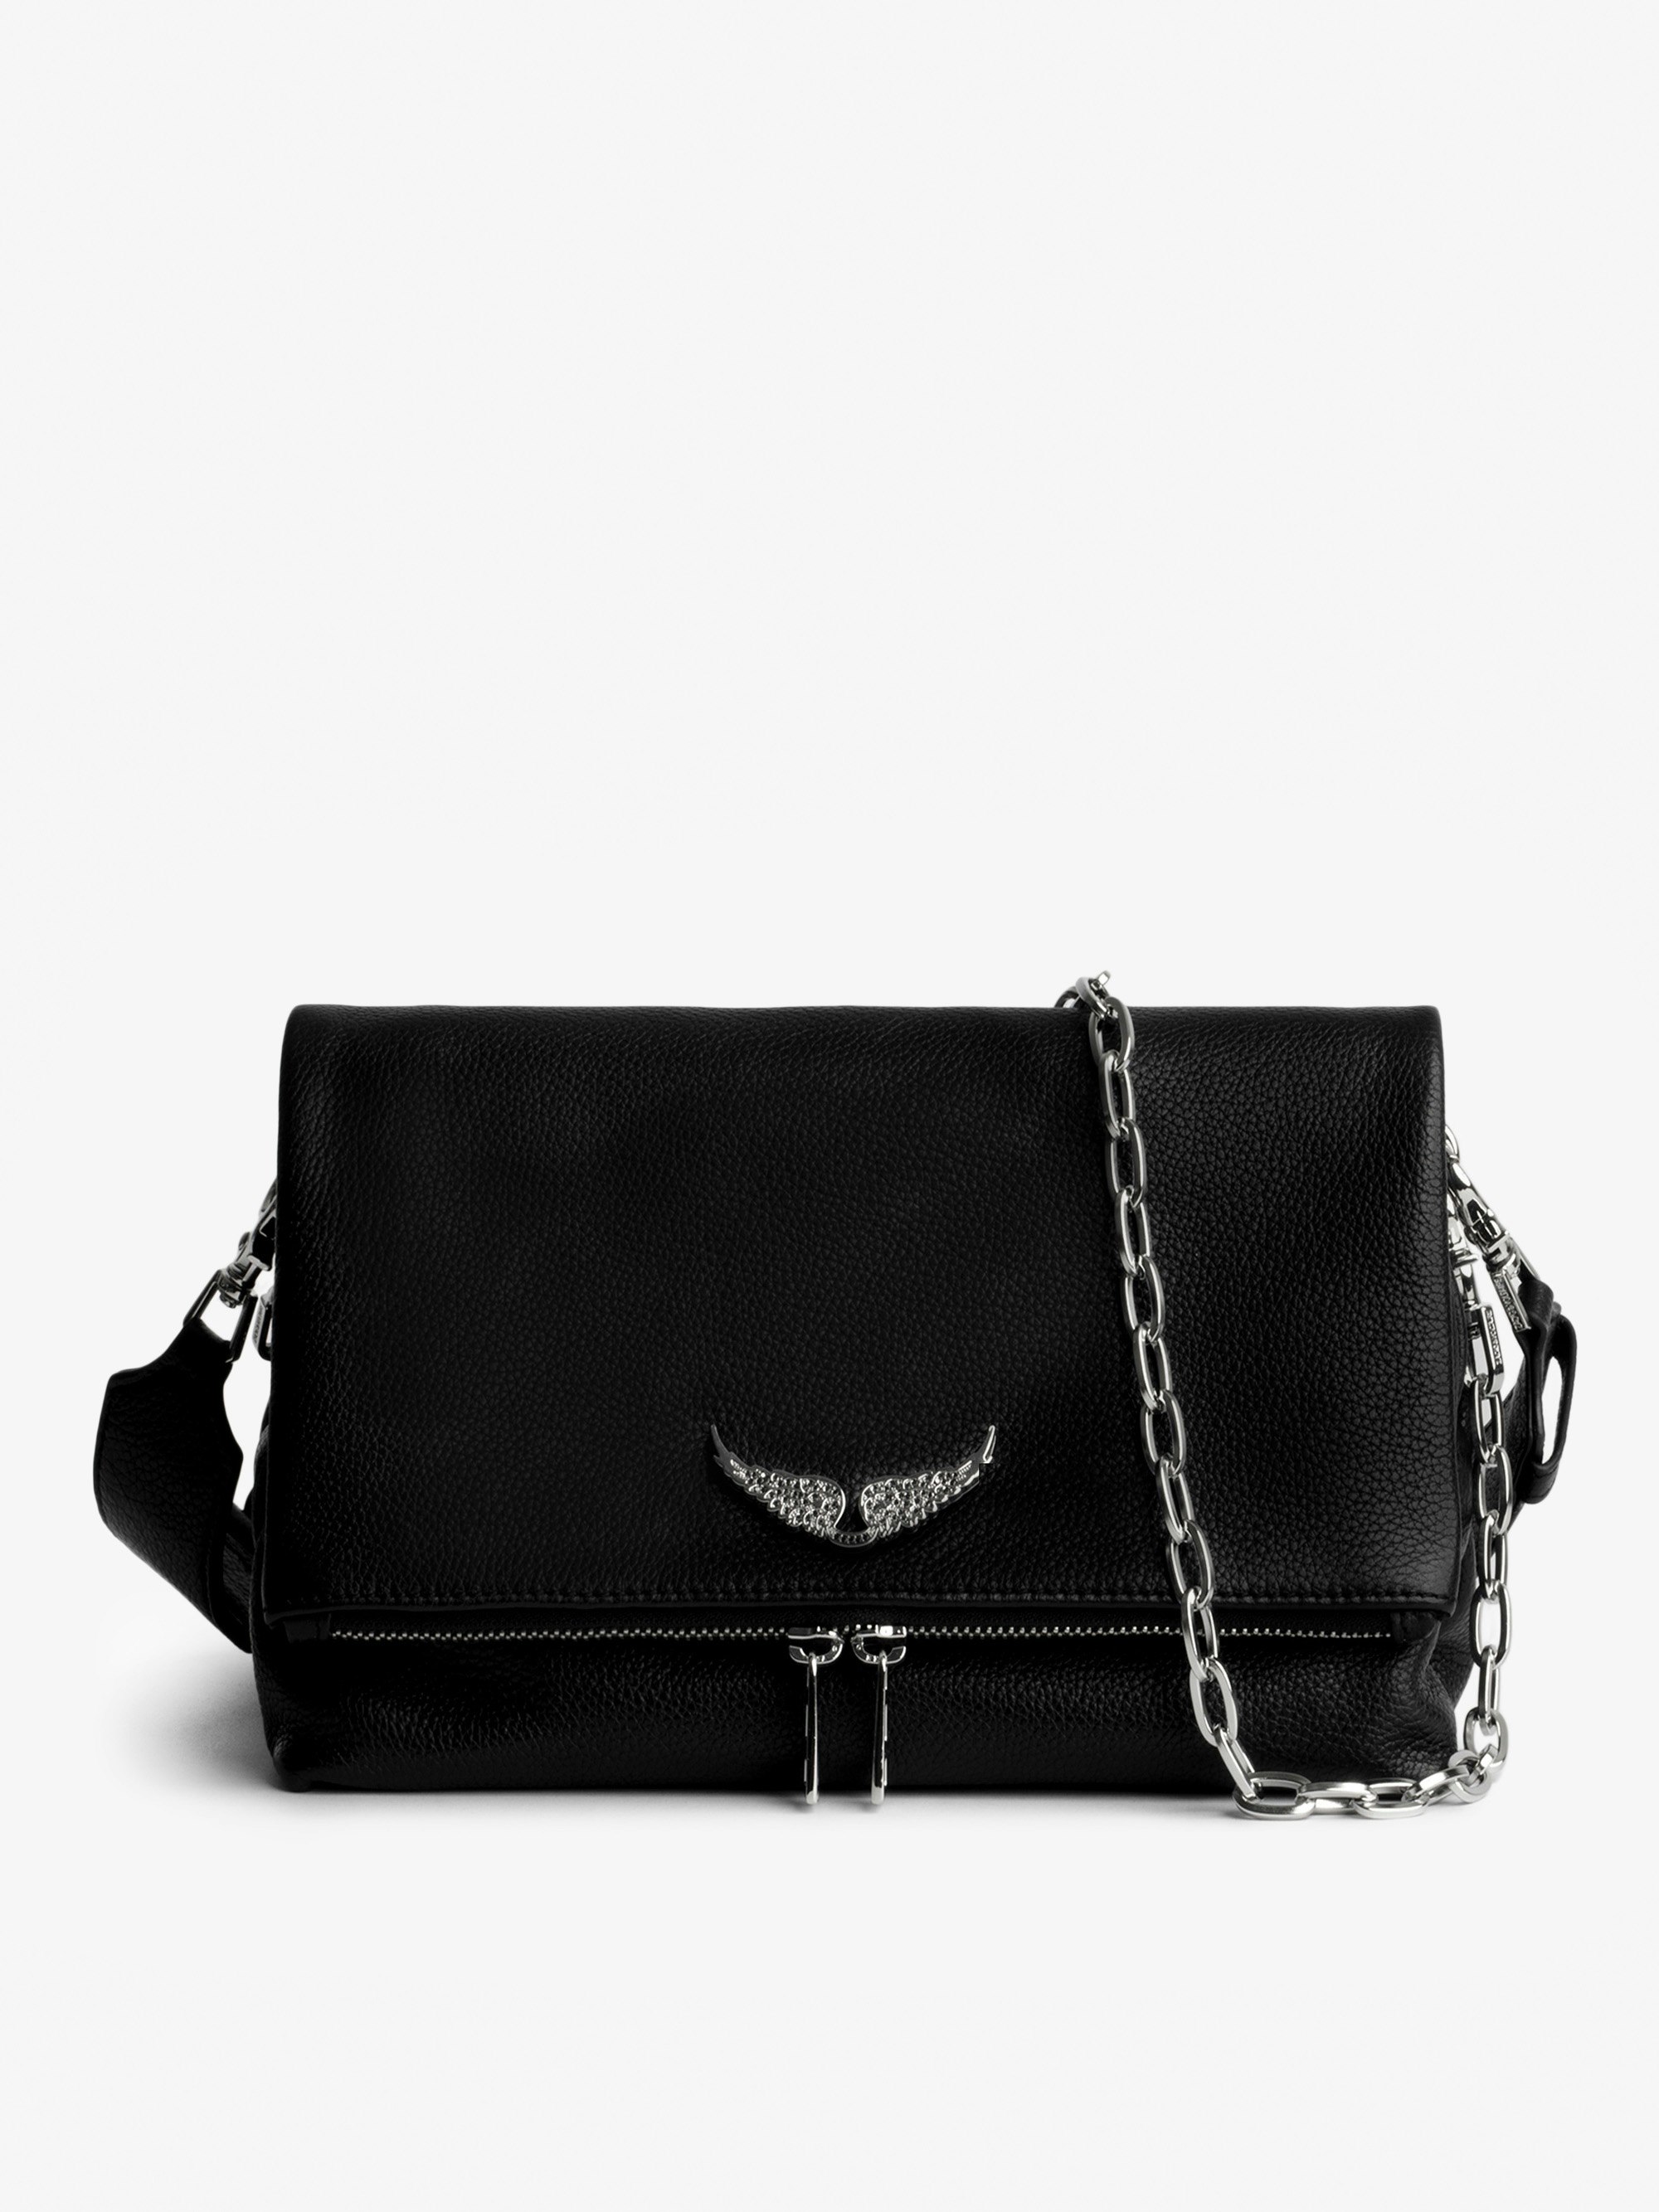 Tasche Rocky Swing Your Wings - Damentasche Rocky aus schwarzem Leder mit silberfarbener Metallkette